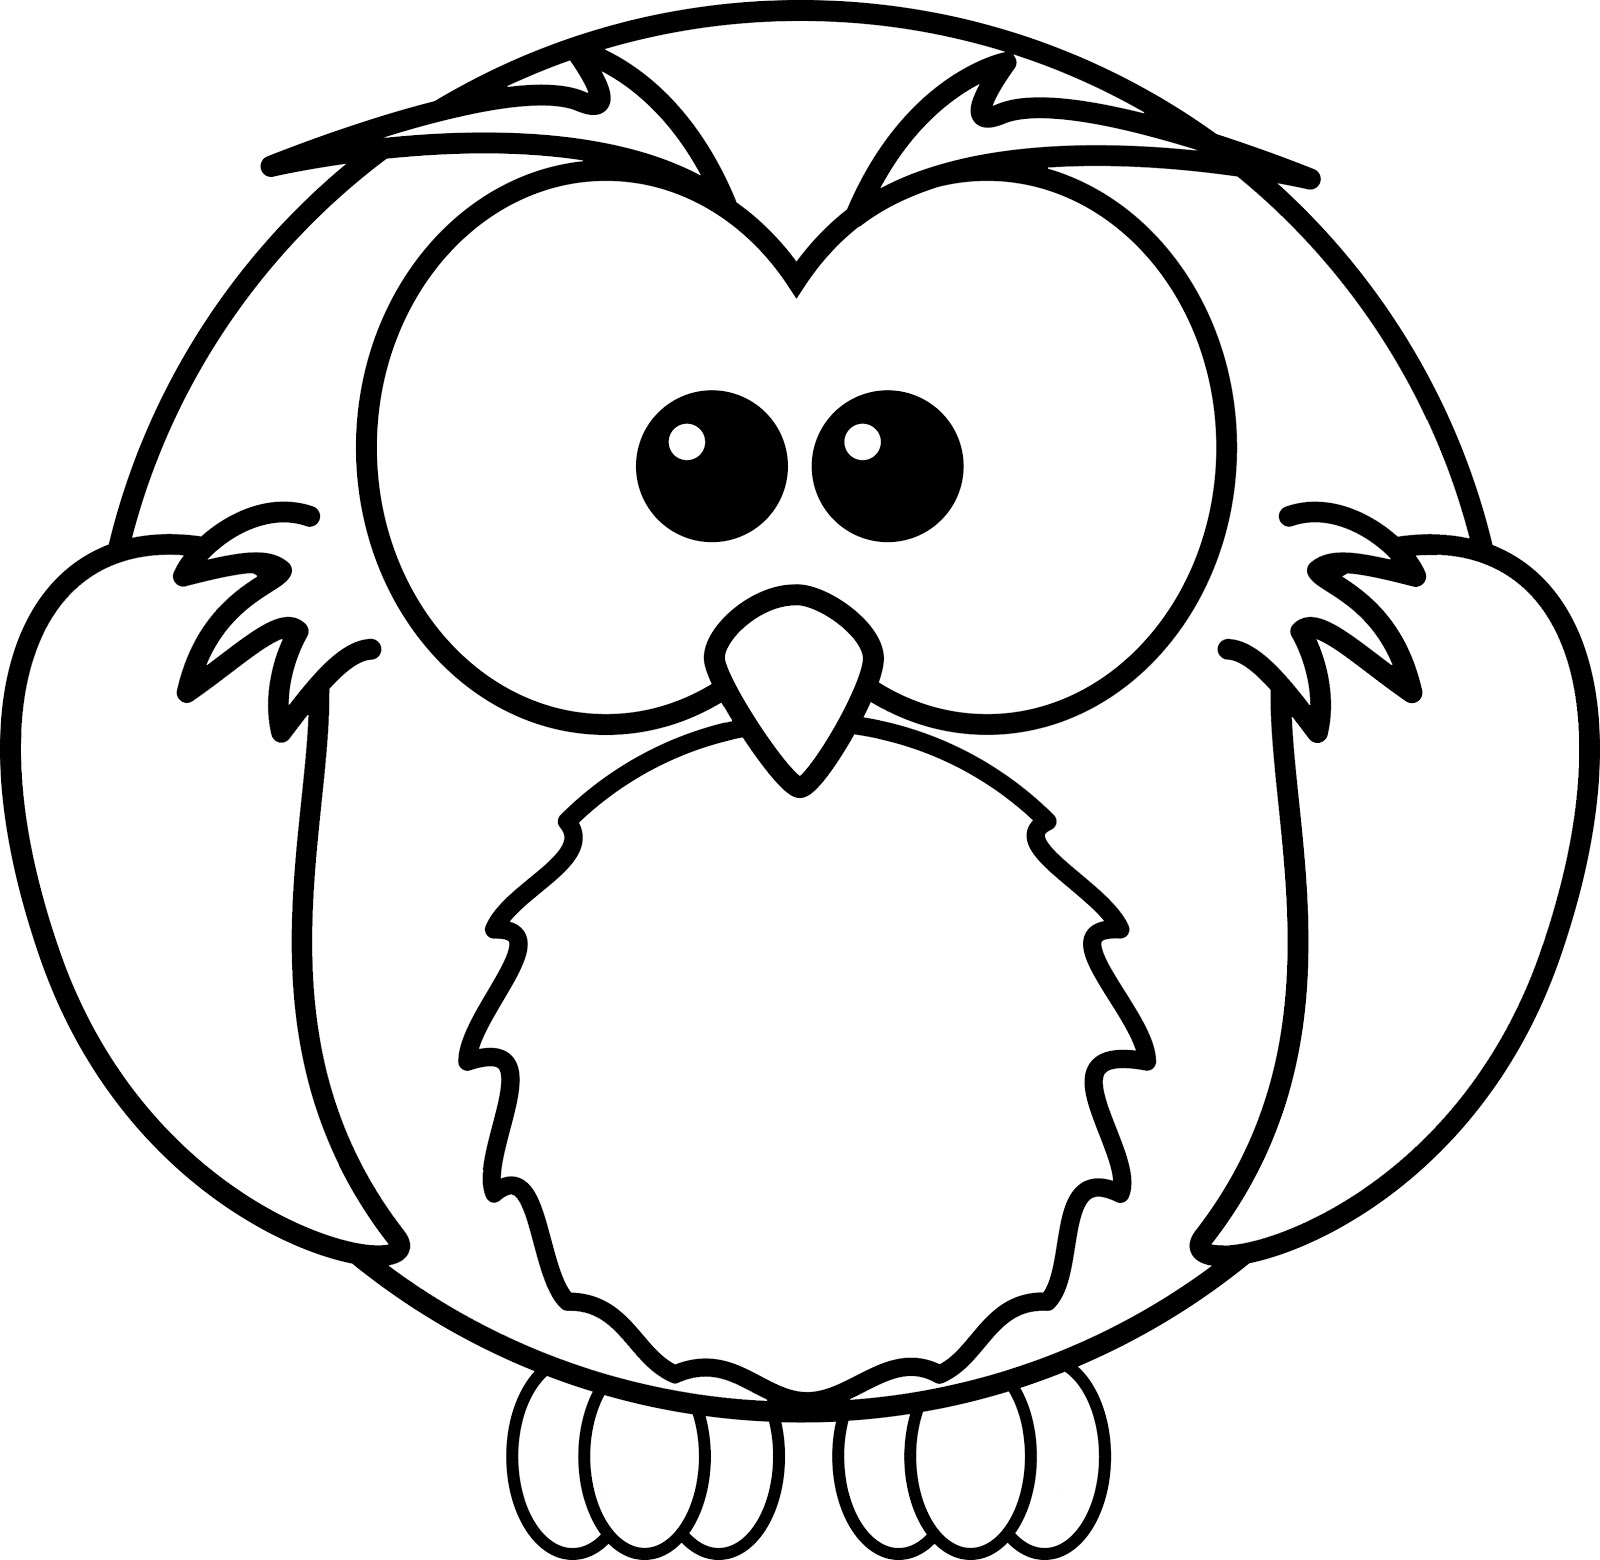 OWL (Burung Hantu) | anggriechan